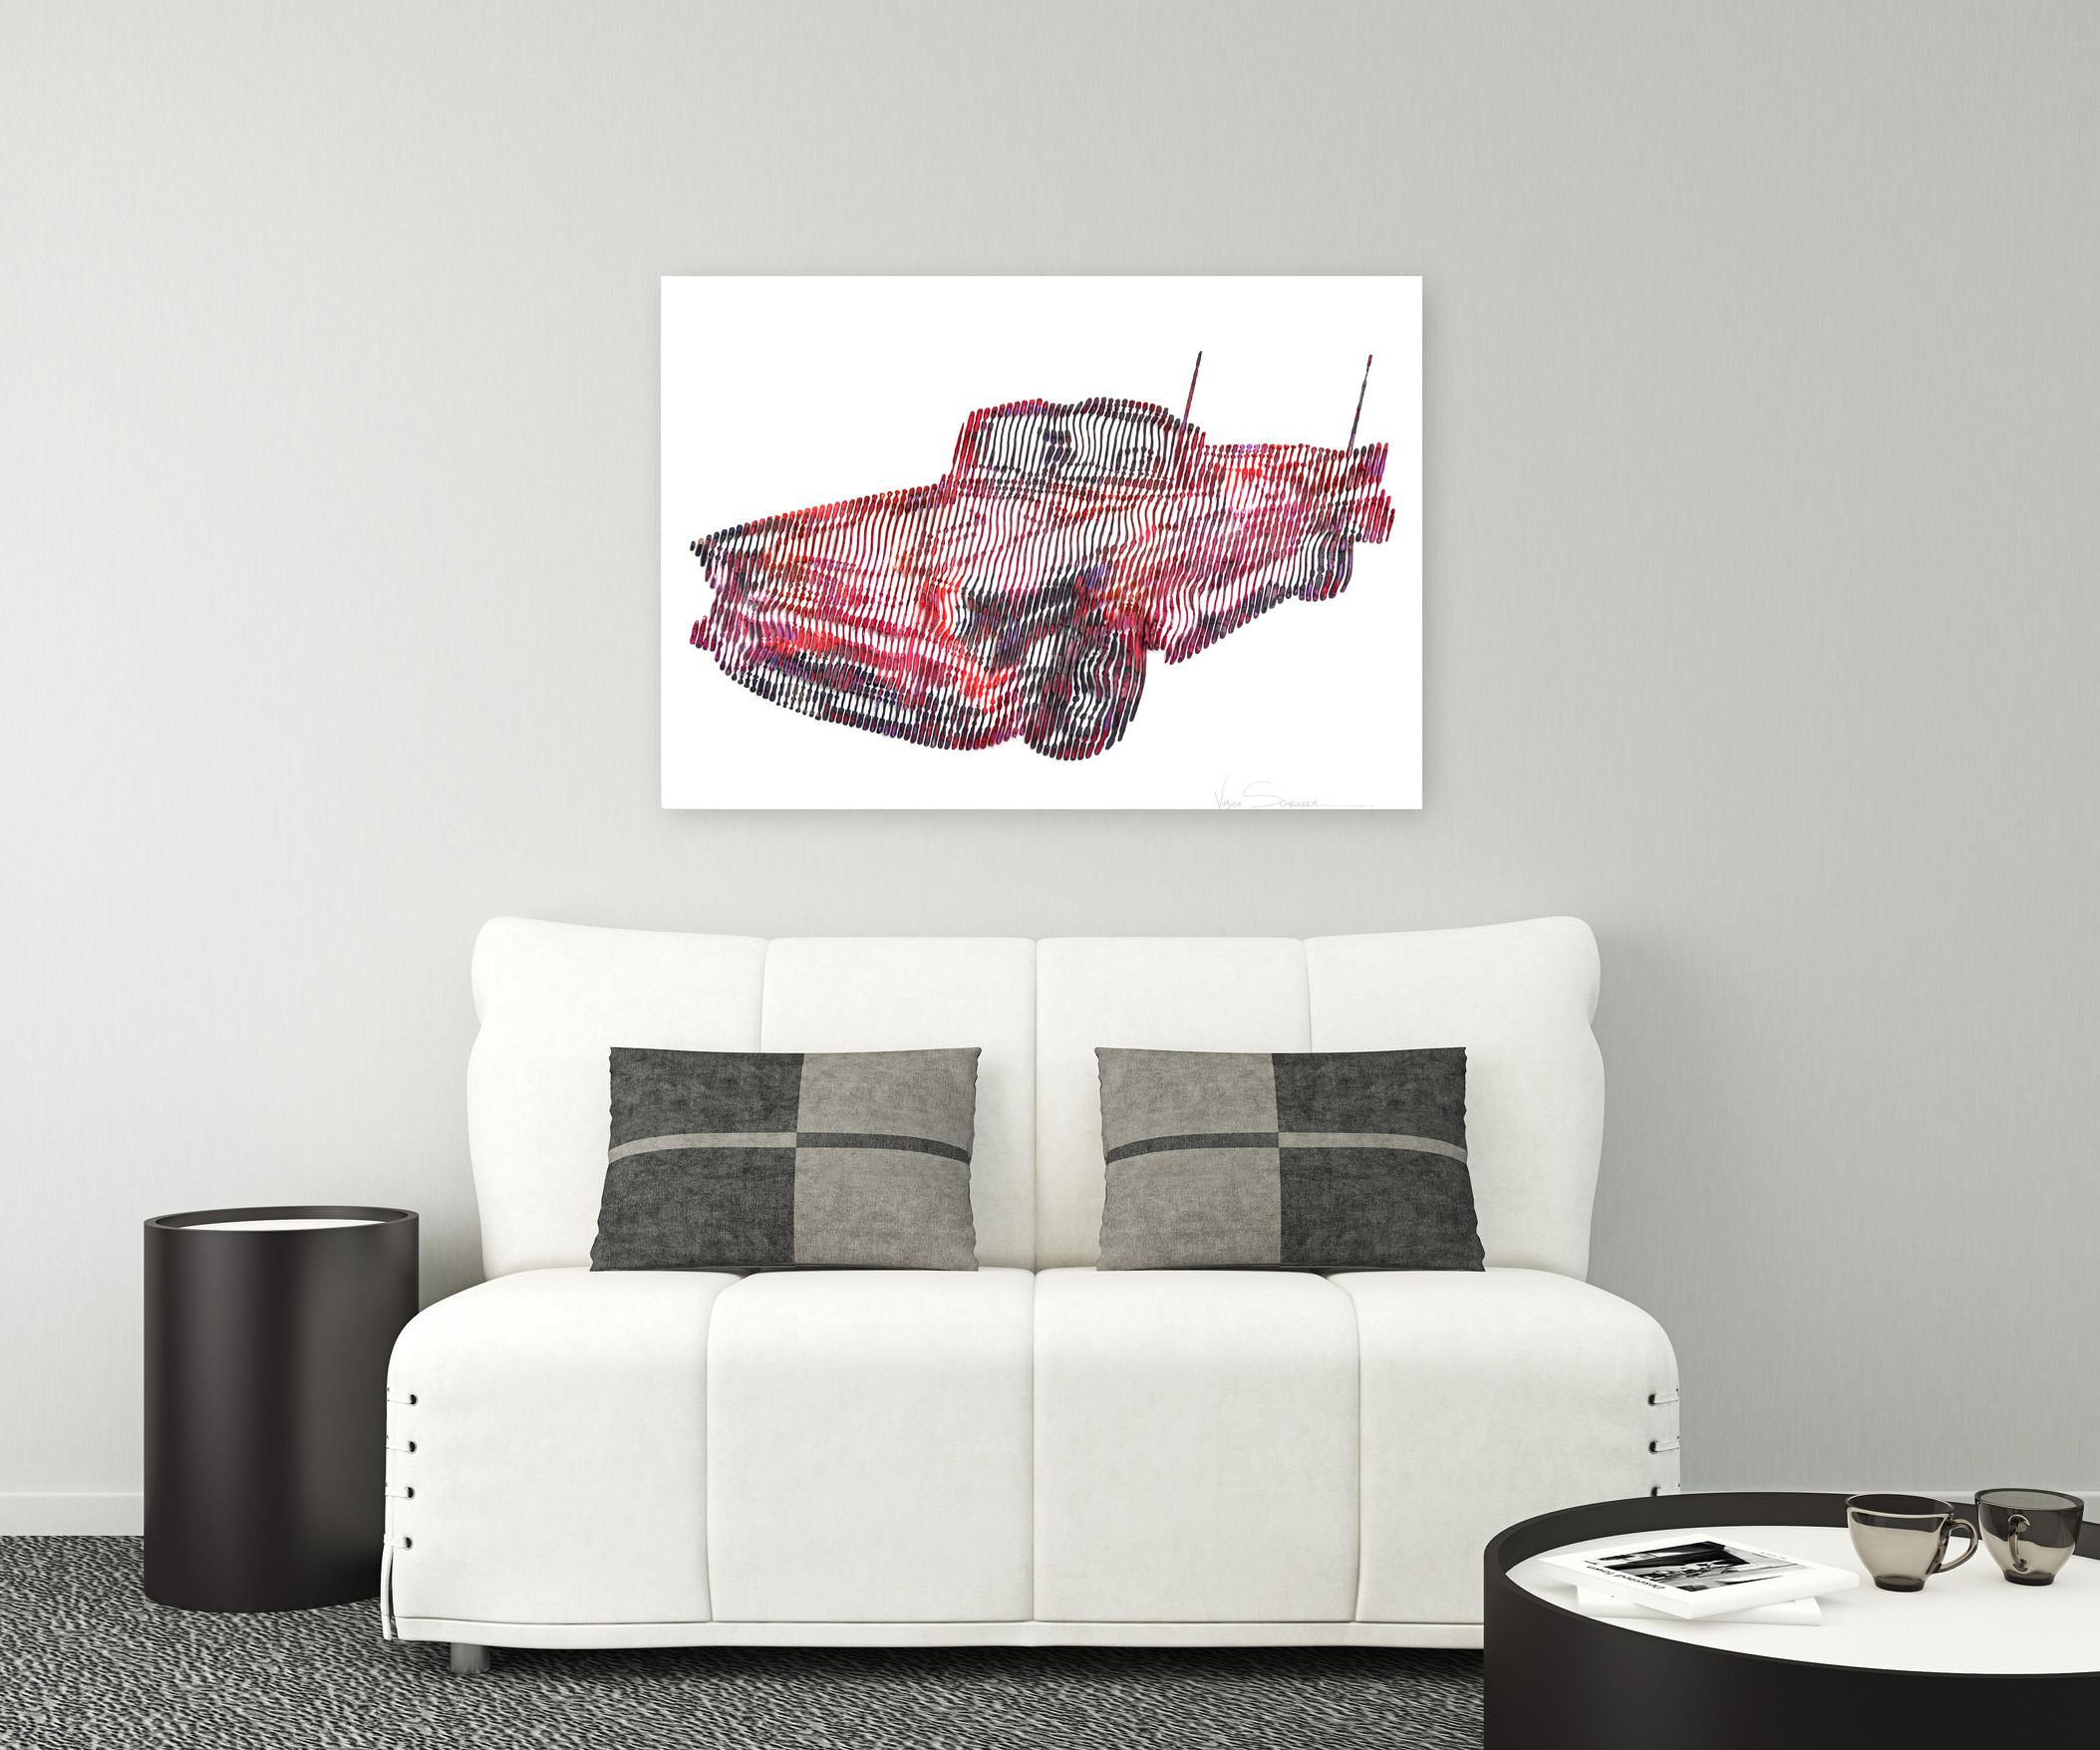 Chevrolet Bel Air 1957 - Pink Portrait Painting by Virginie Schroeder